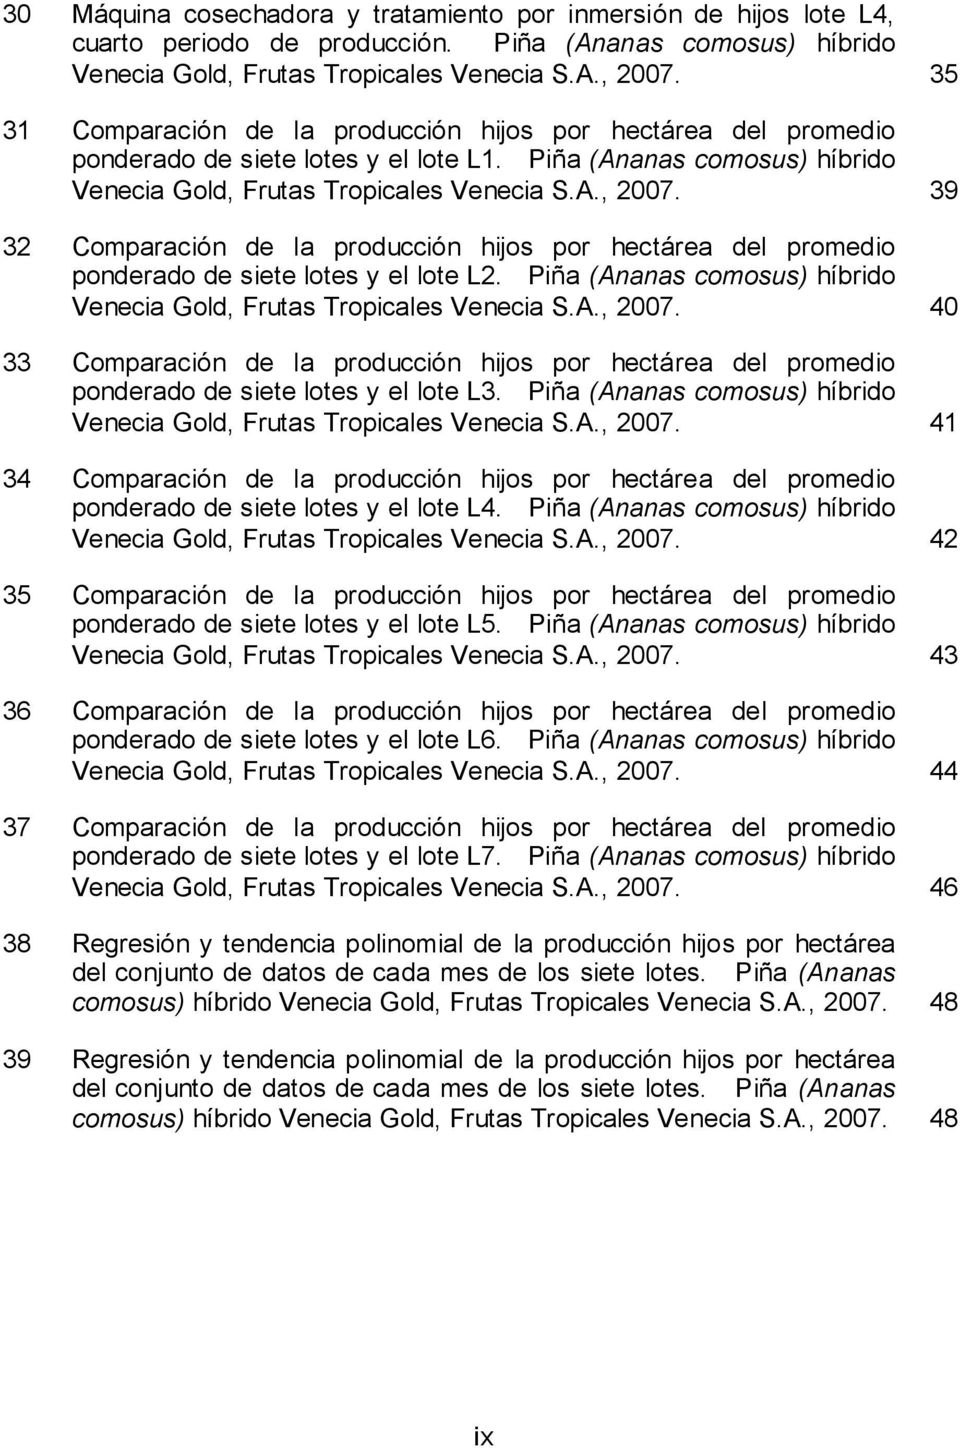 39 32 Comparación de la producción hijos por hectárea del promedio ponderado de siete lotes y el lote L2. Piña (Ananas comosus) híbrido Venecia Gold, Frutas Tropicales Venecia S.A., 2007.